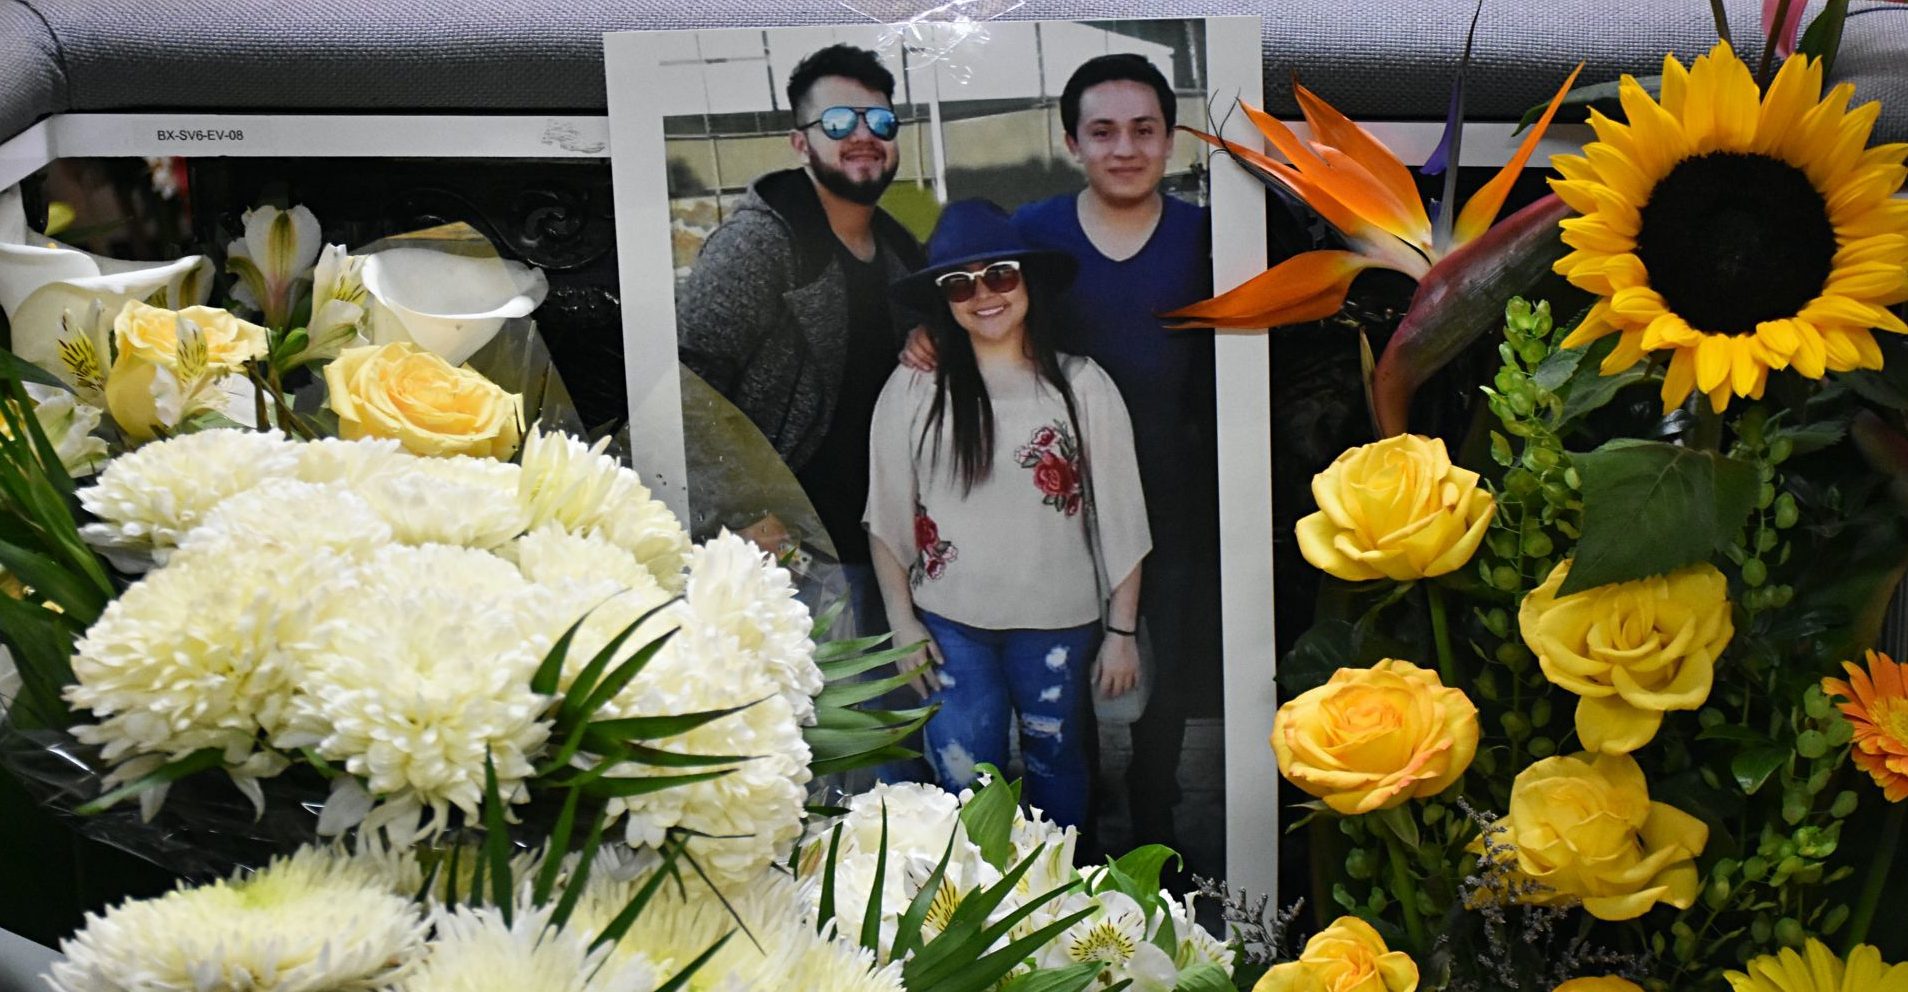 Upaep y BUAP inician paro por el asesinato de tres estudiantes en Puebla